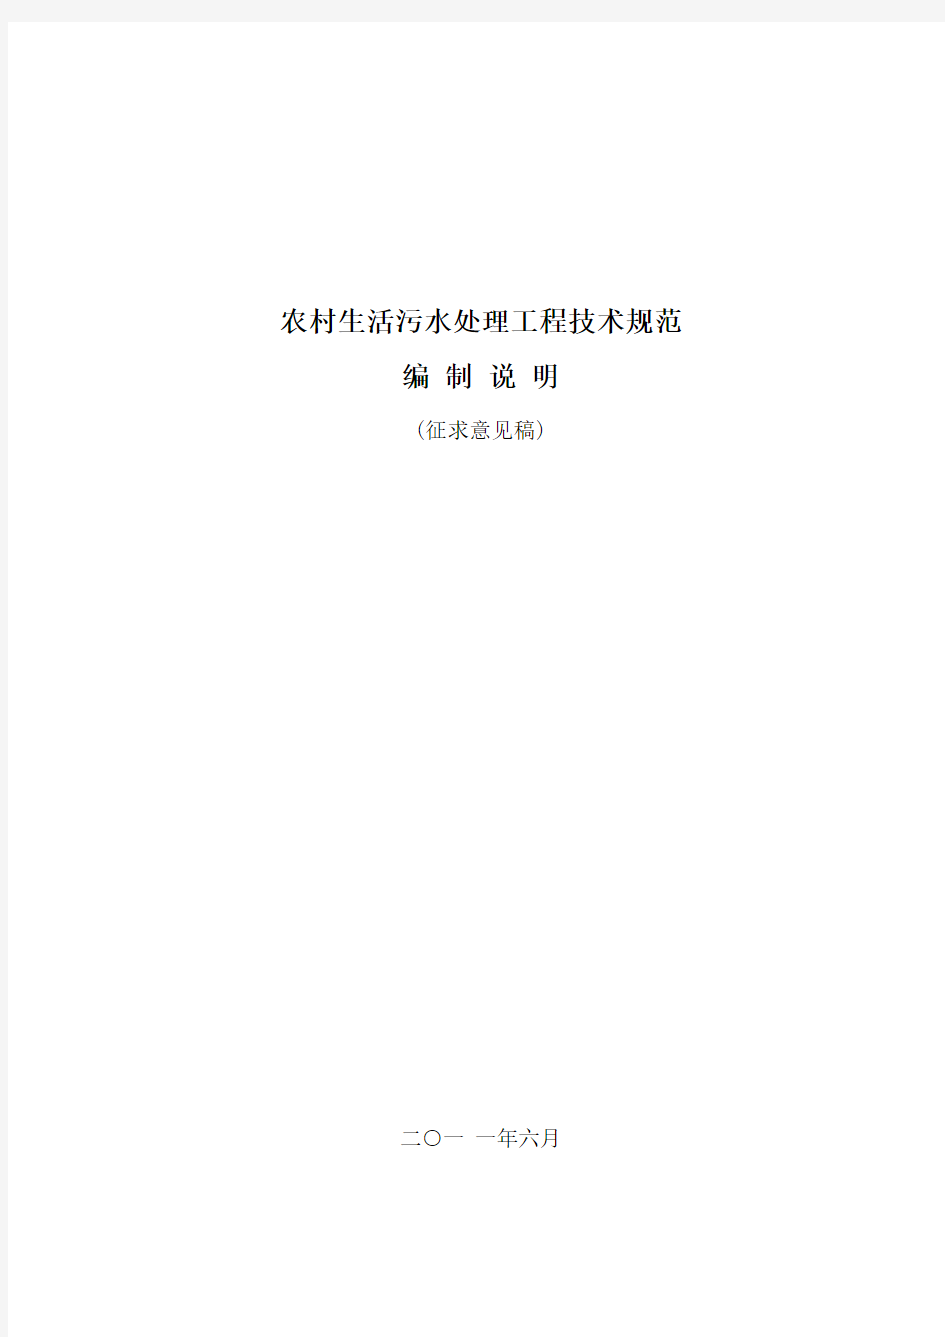 浙江省农村生活污水处理工程技术规范(征求意见稿)